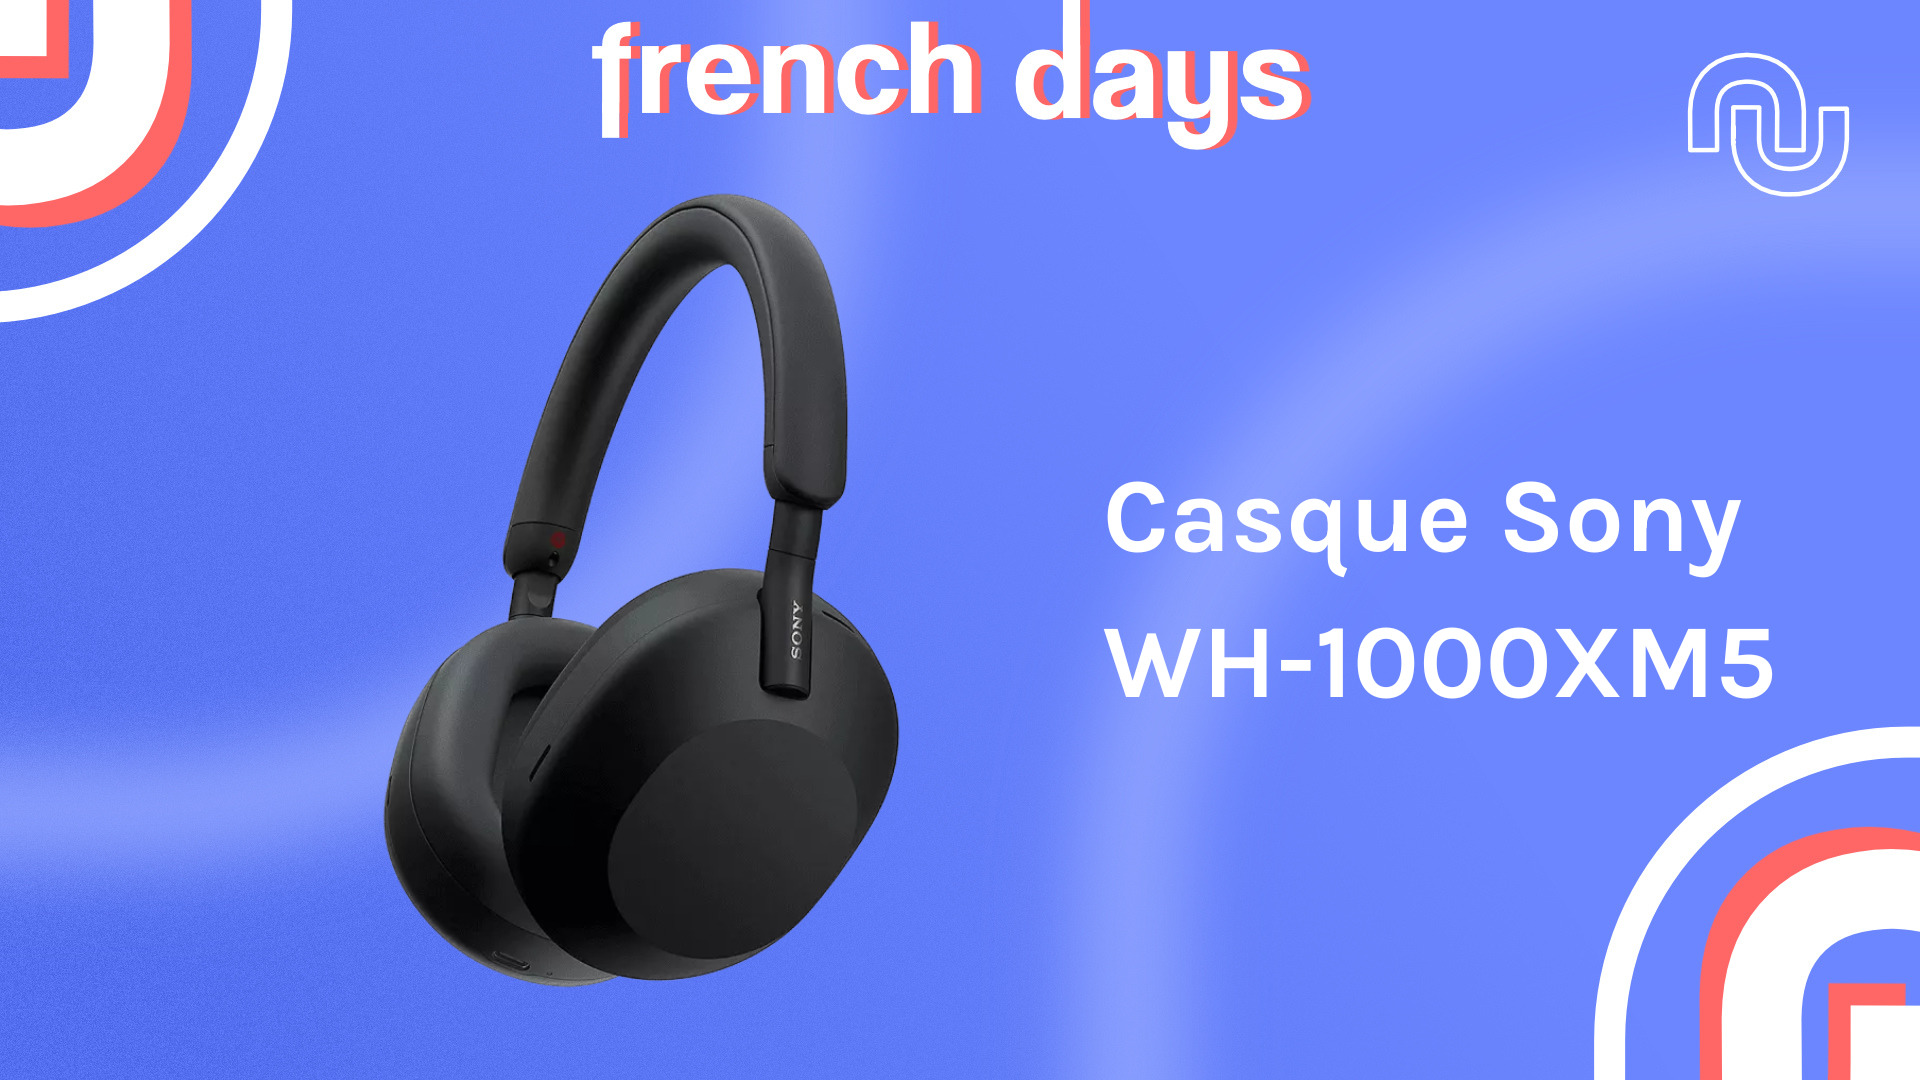 Bose QC SE : cette bonne copie du casque QC 45 est à prix sacrifié pendant  les French Days